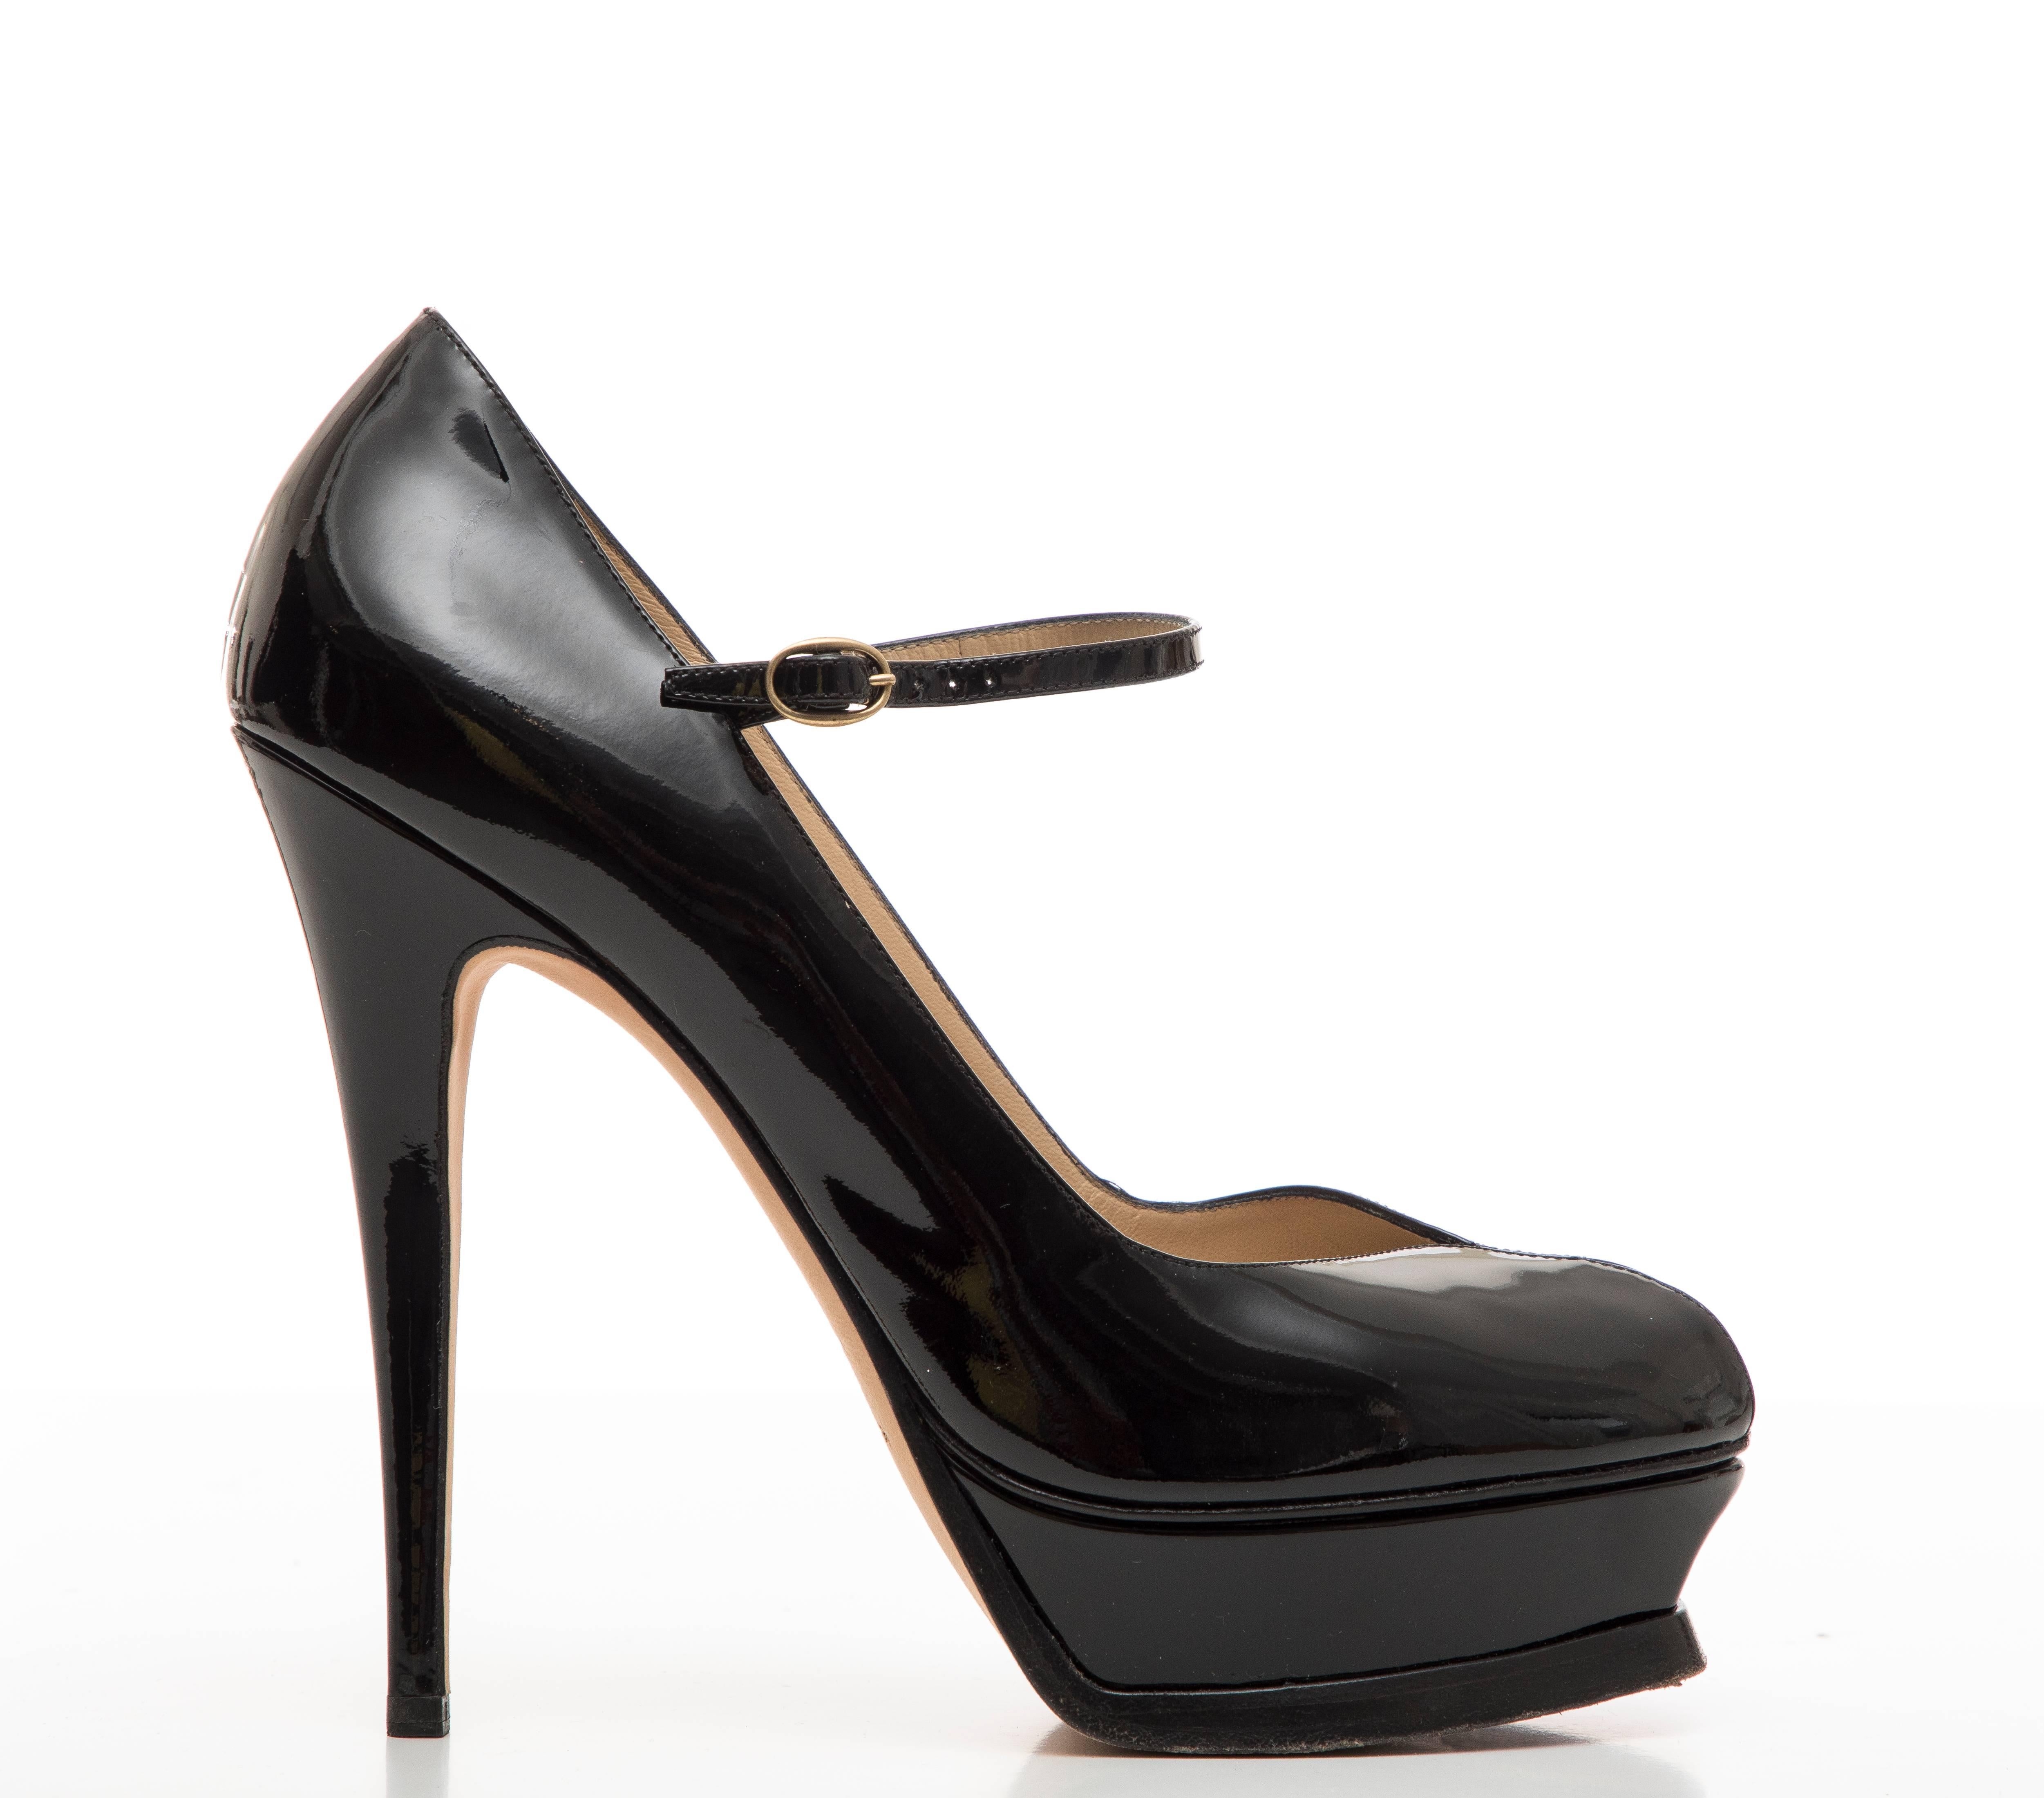 Yves Saint Laurent  black patent leather platform pumps.

IT. 41, US. 11